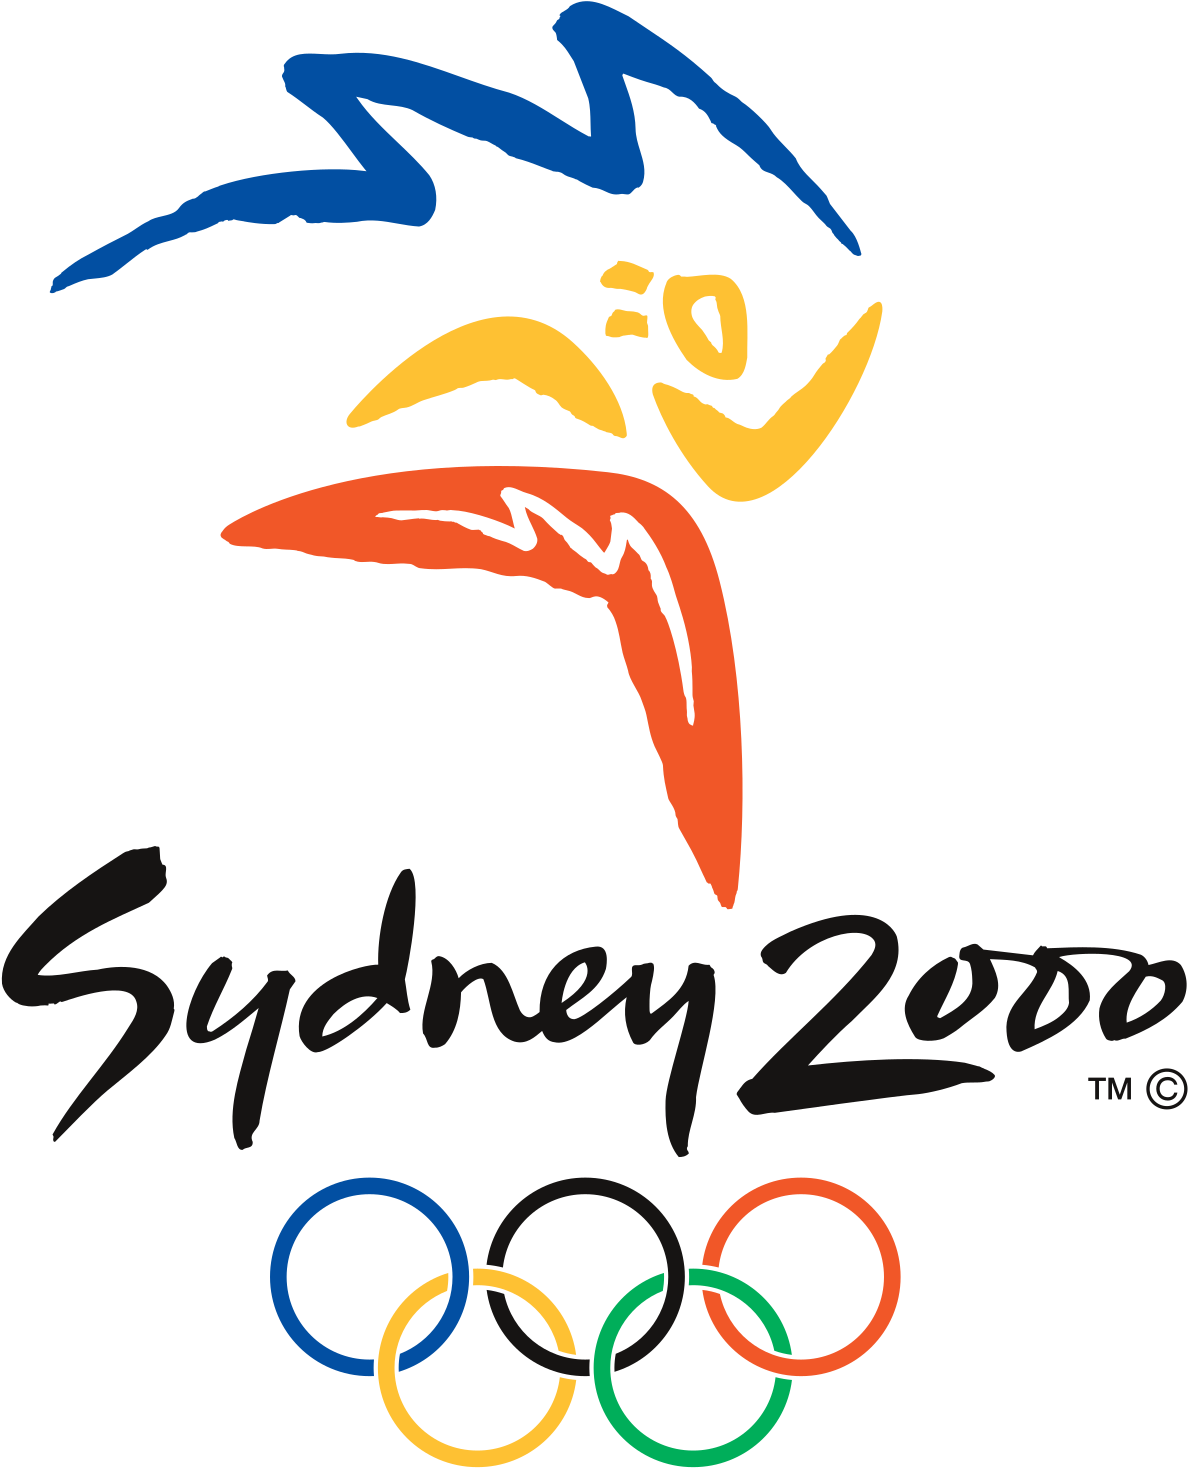 Sydney Olympic Games 2000 (1200x1490)